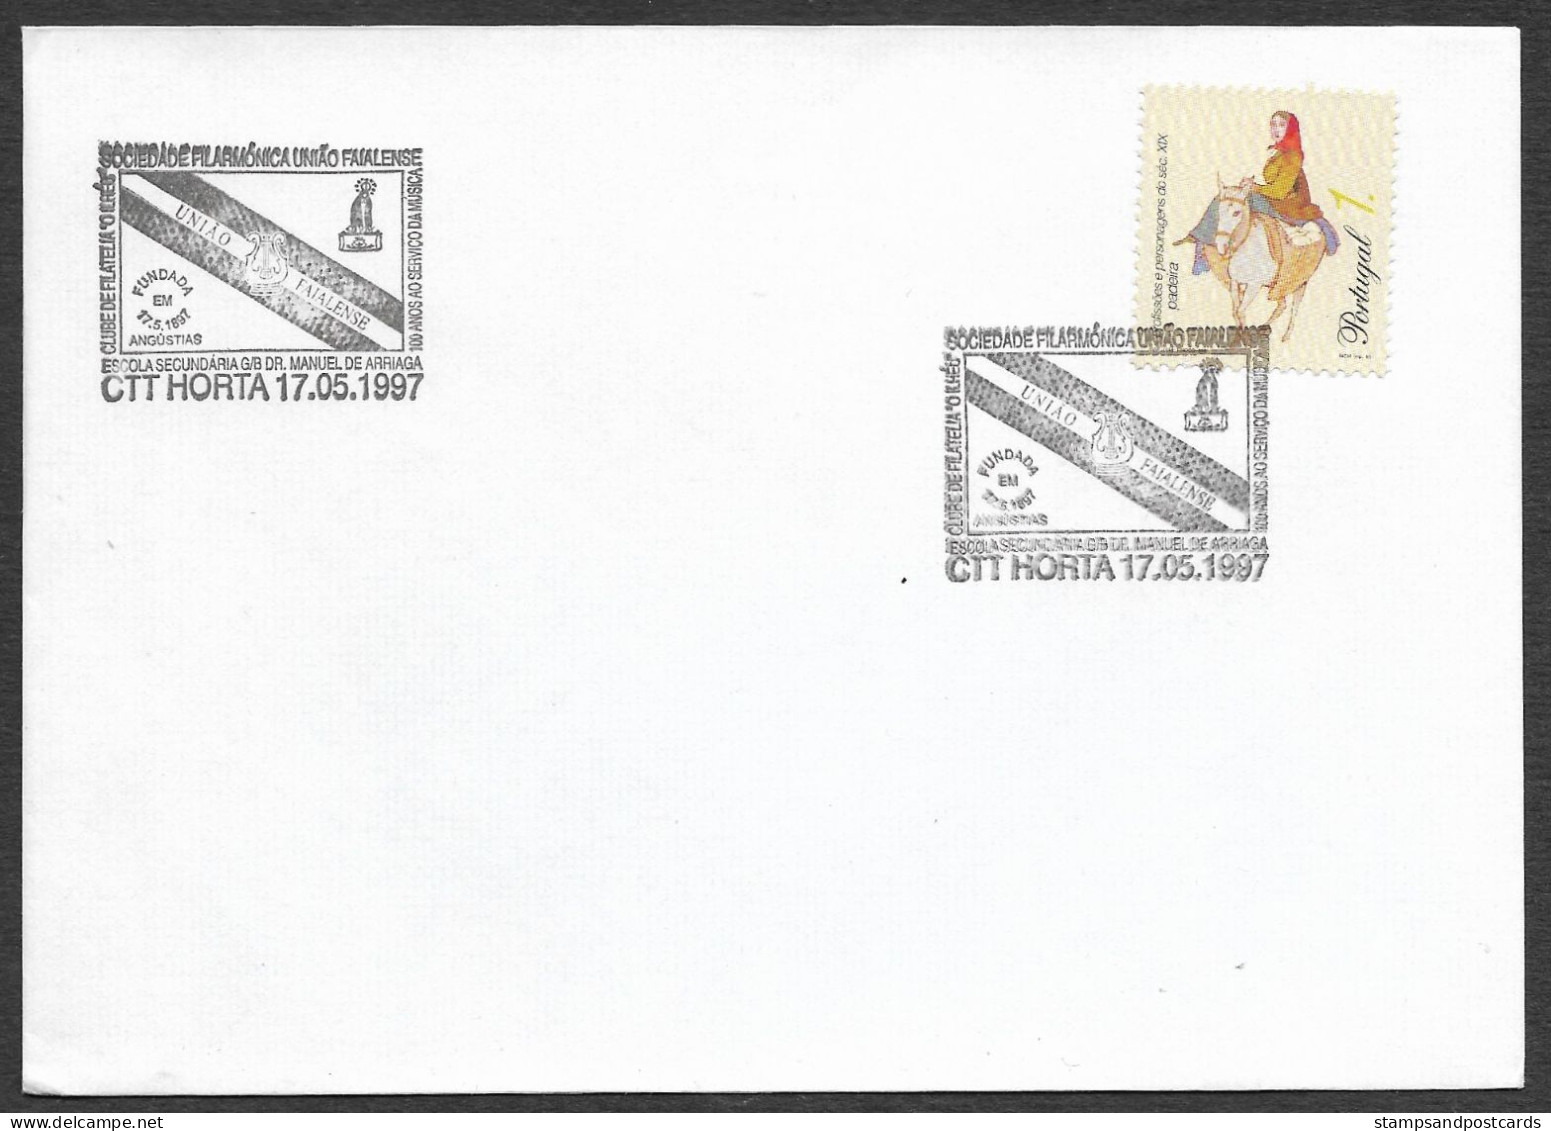 Portugal Cachet Commemoratif Sociedade Filarmónica União Faialense Horta Açores 1997 Event Postmark Azores - Maschinenstempel (Werbestempel)